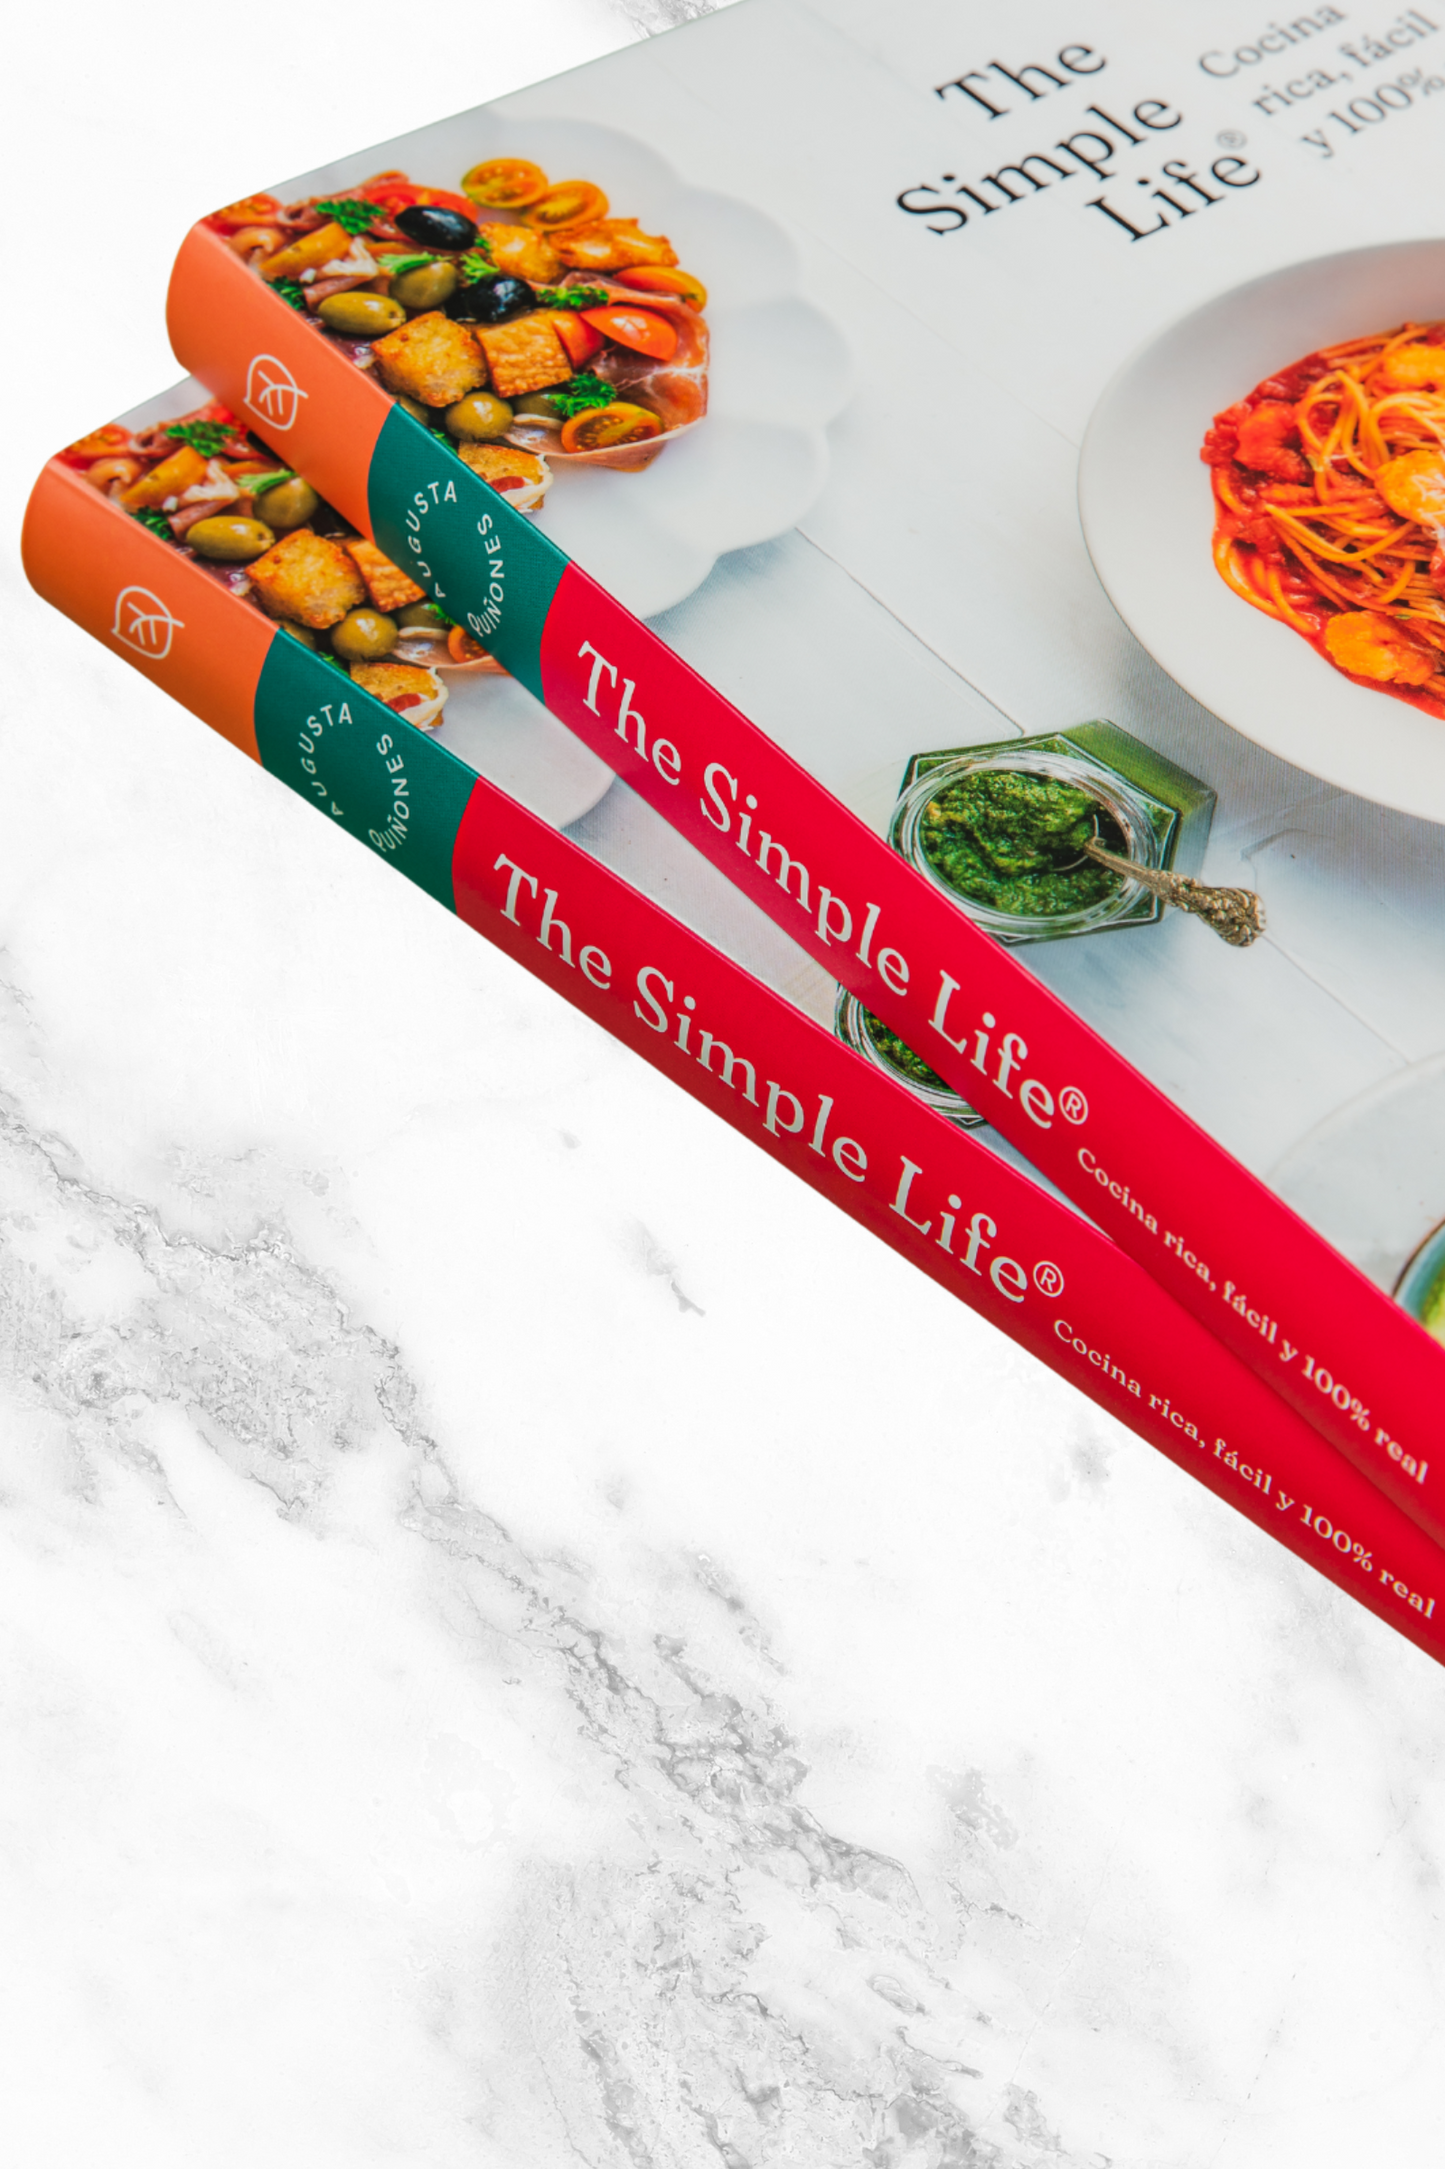 Libro The Simple Life® : cocina rica, fácil y 100% real